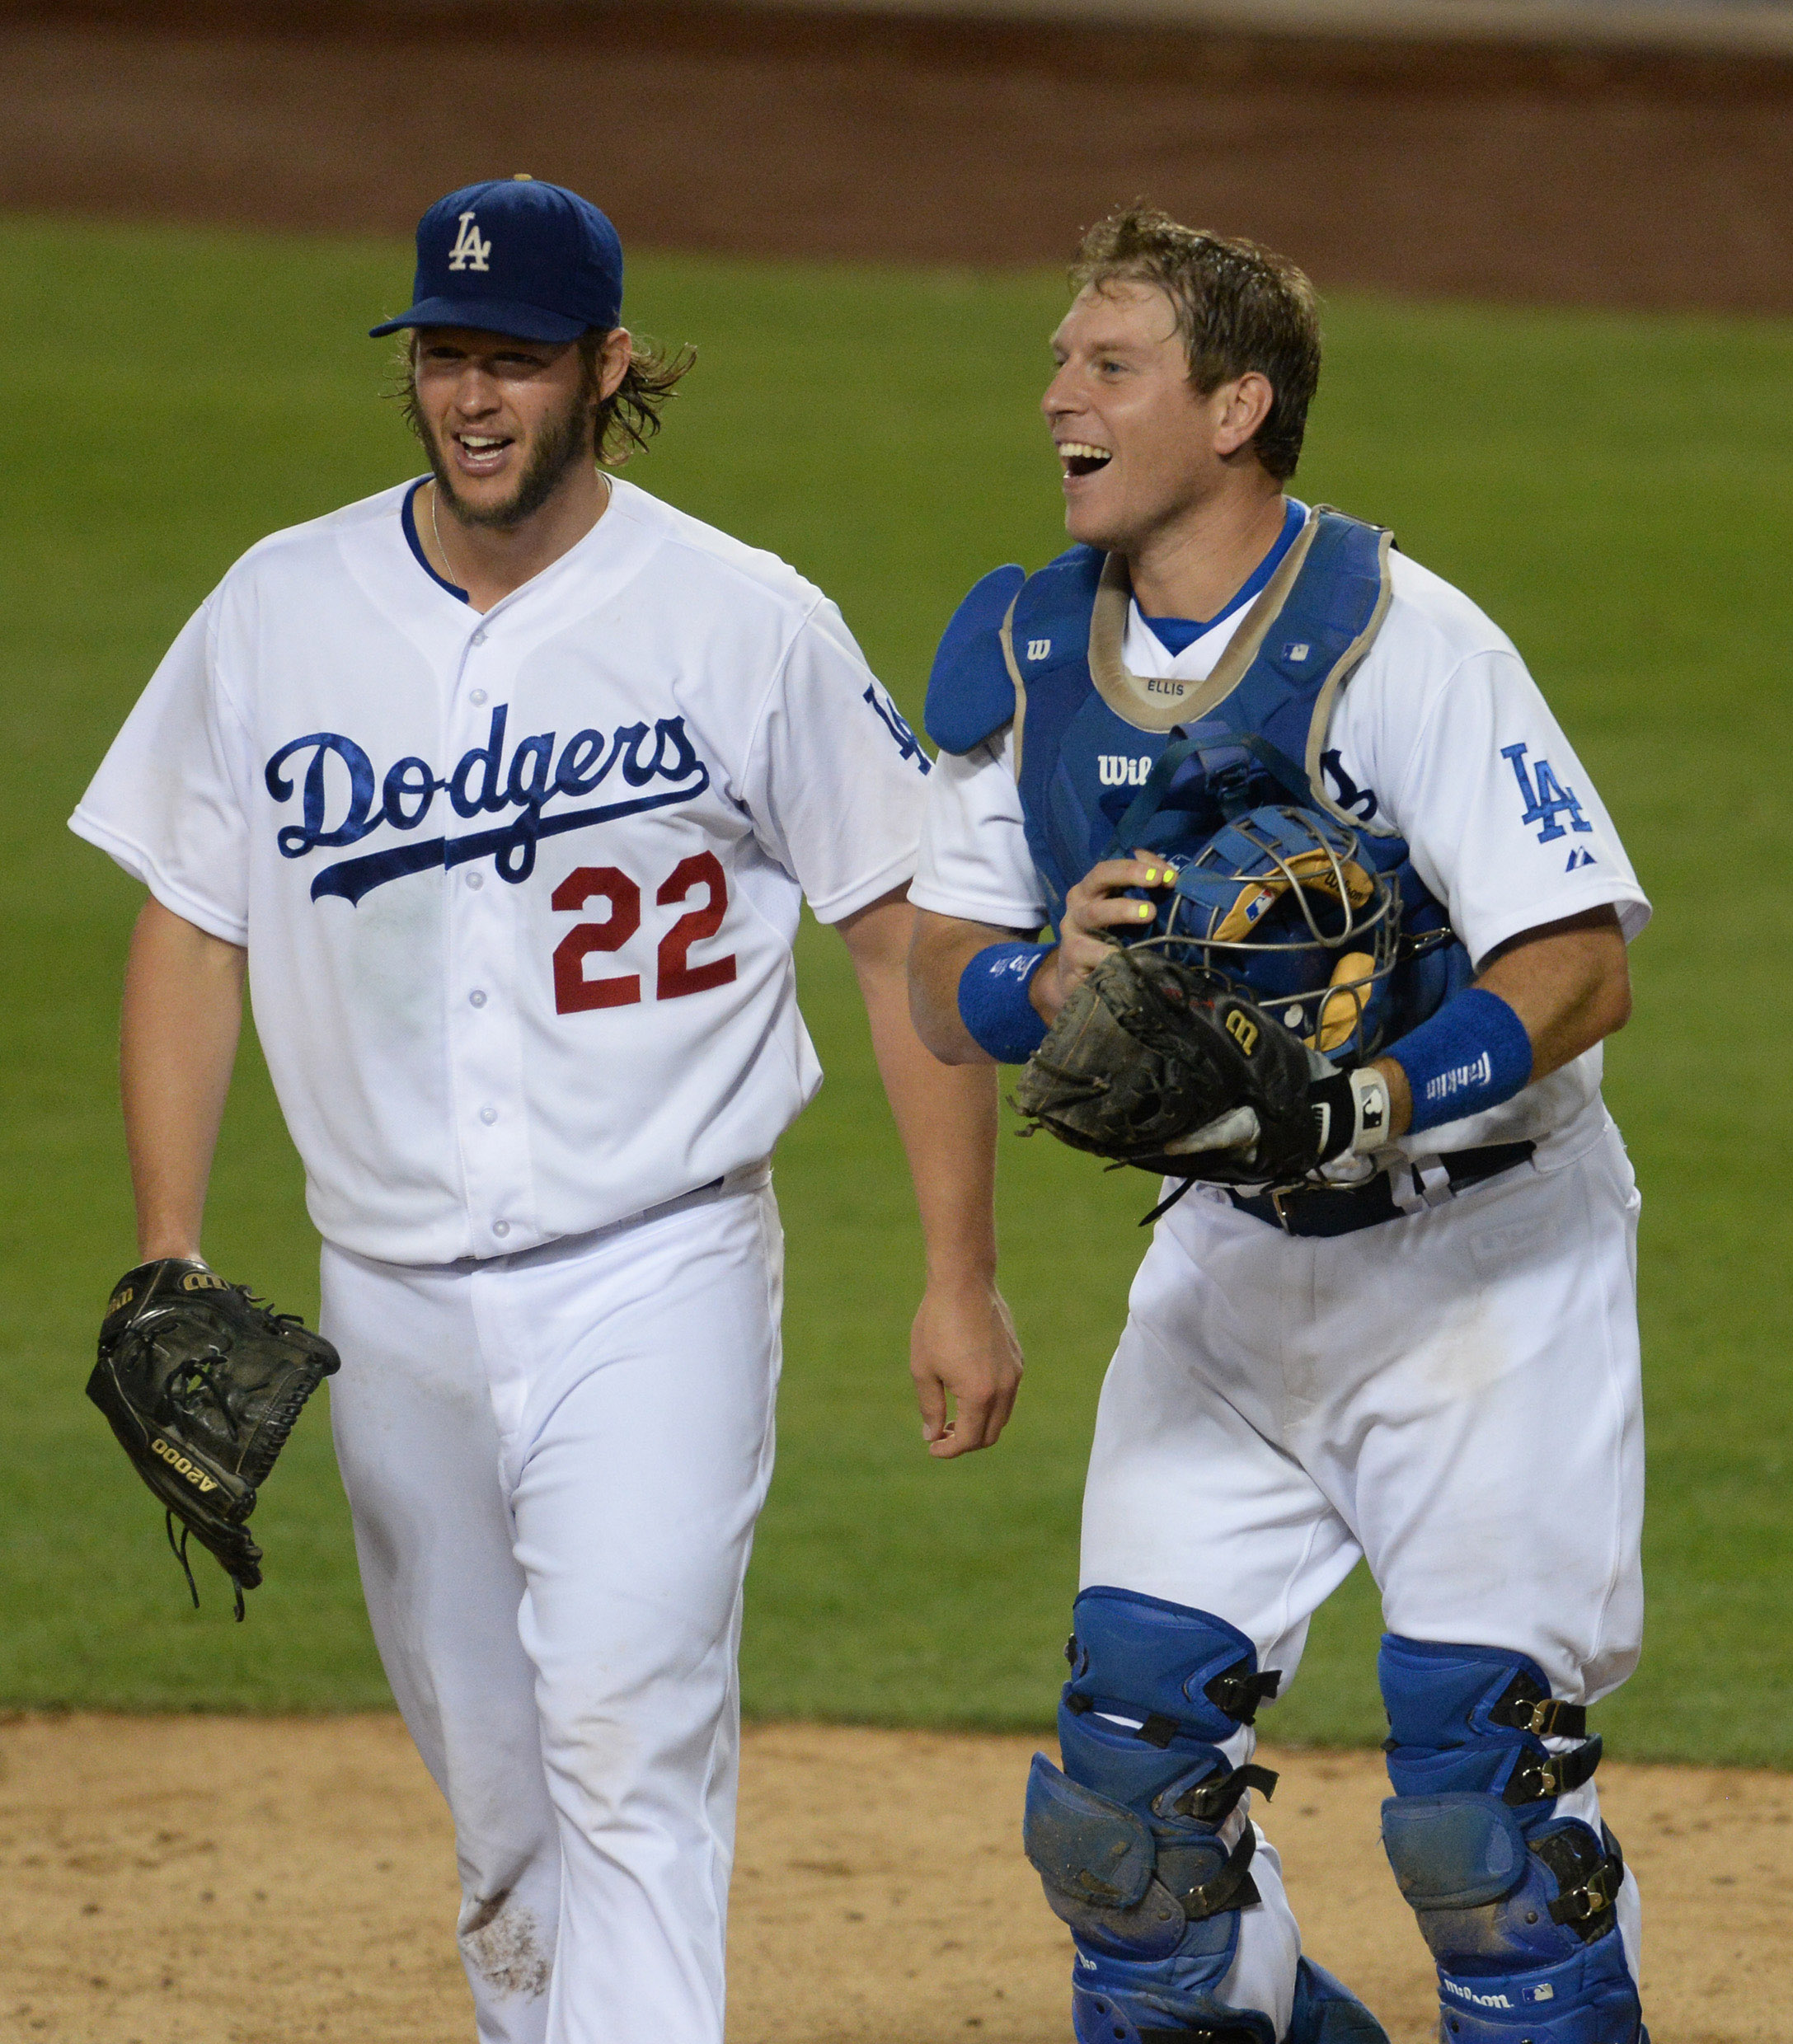 Josh Beckett - Los Angeles Dodgers Starting Pitcher - ESPN